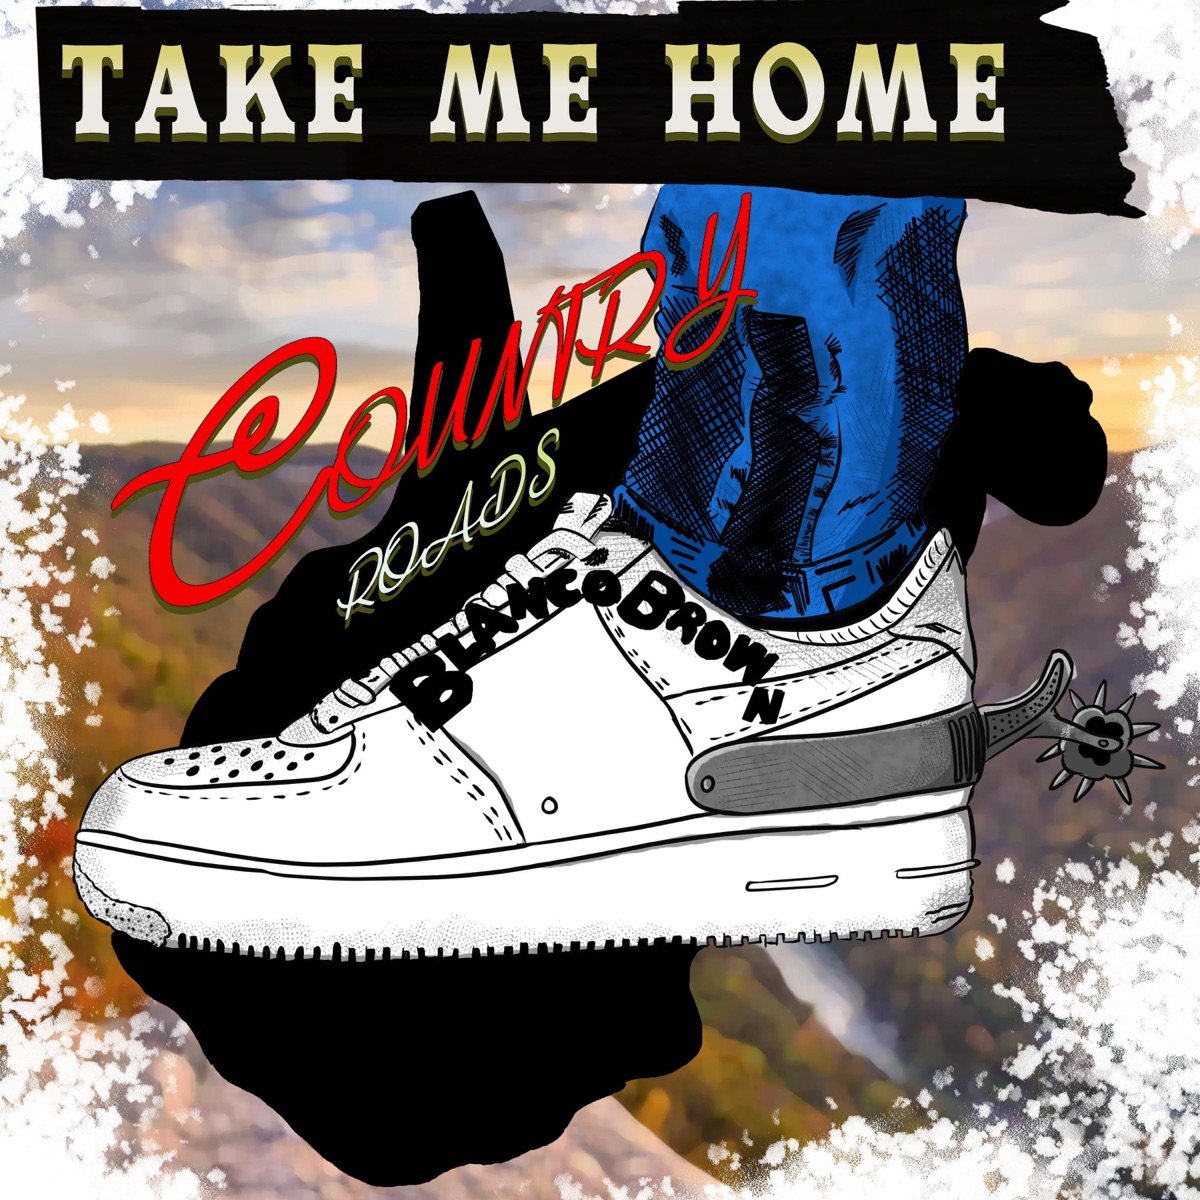 Take Me Home, Country Roads - Single” álbum de Blanco Brown en Apple Music